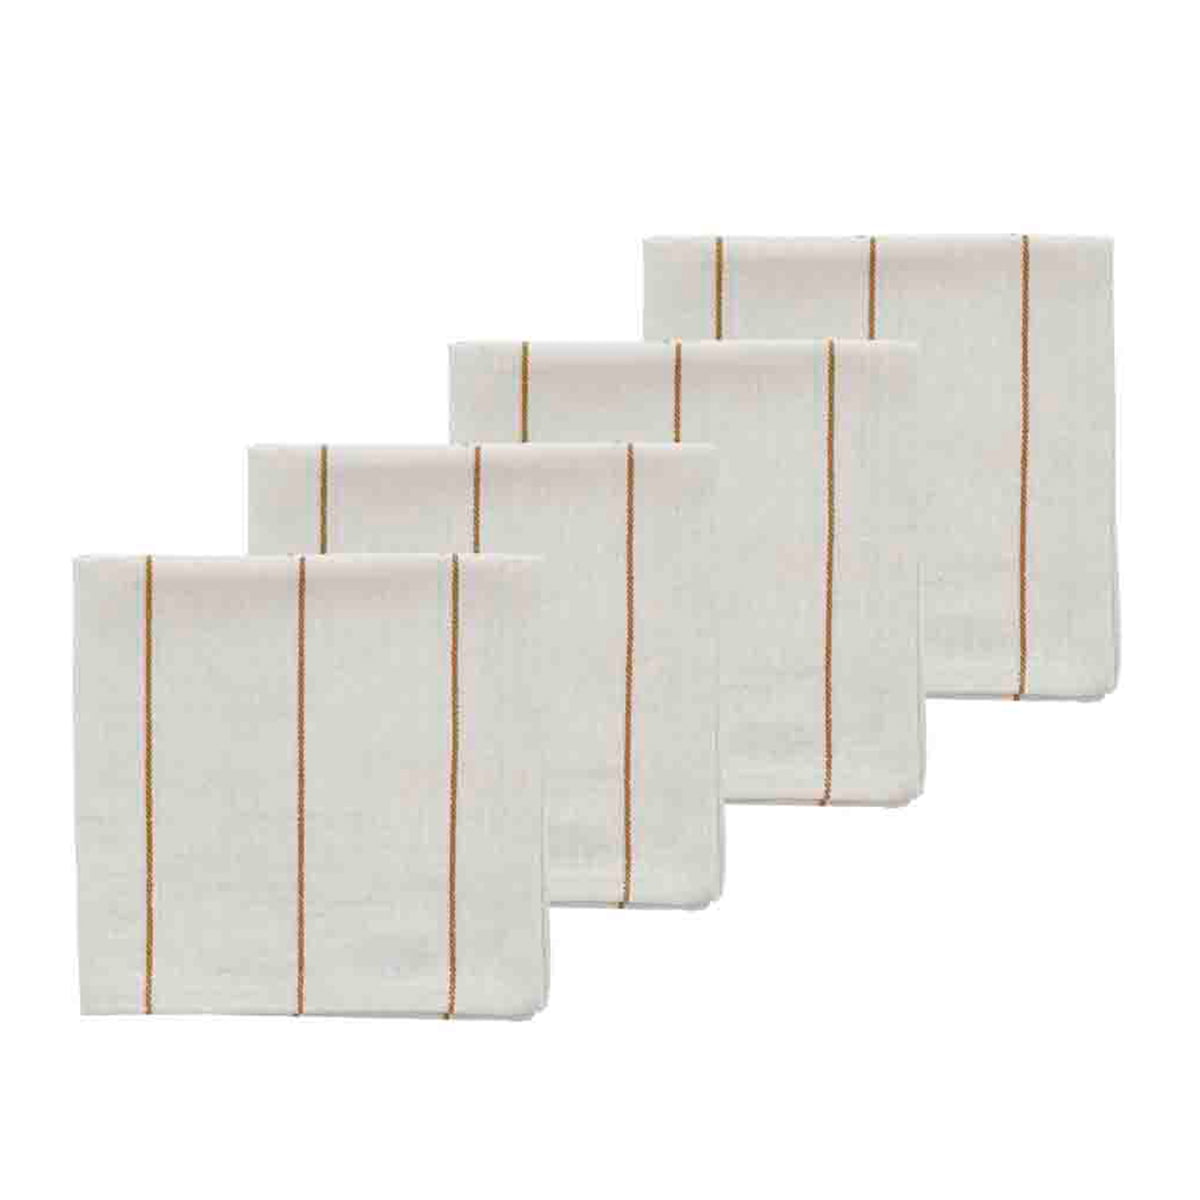 södahl - serviette de table line 40 x 40 cm, blanc cassé / or (lot de 4)